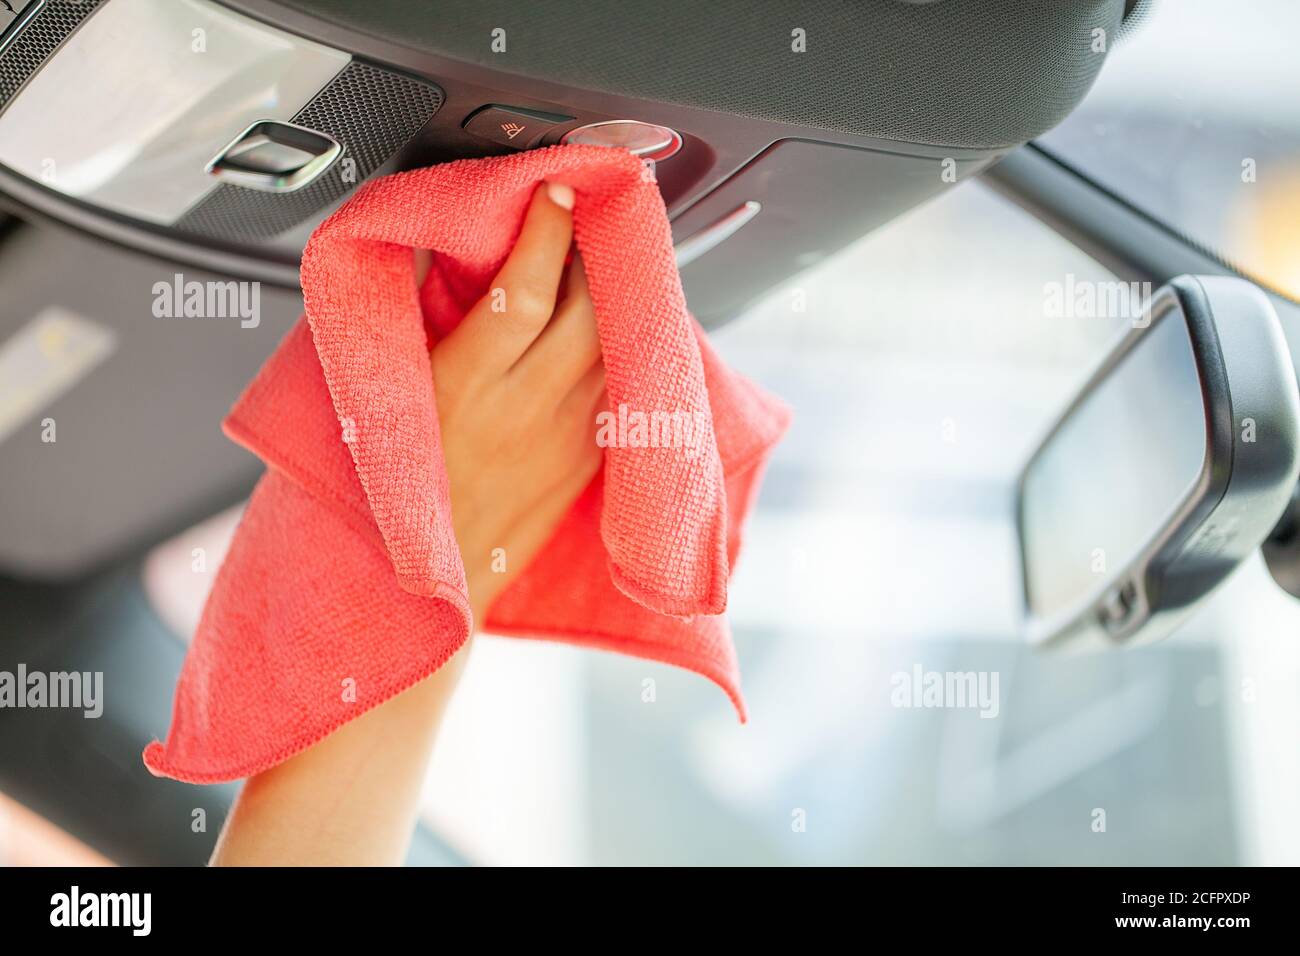 Gros plan d'une femme essuyant l'intérieur de la voiture avec un chiffon rouge Banque D'Images